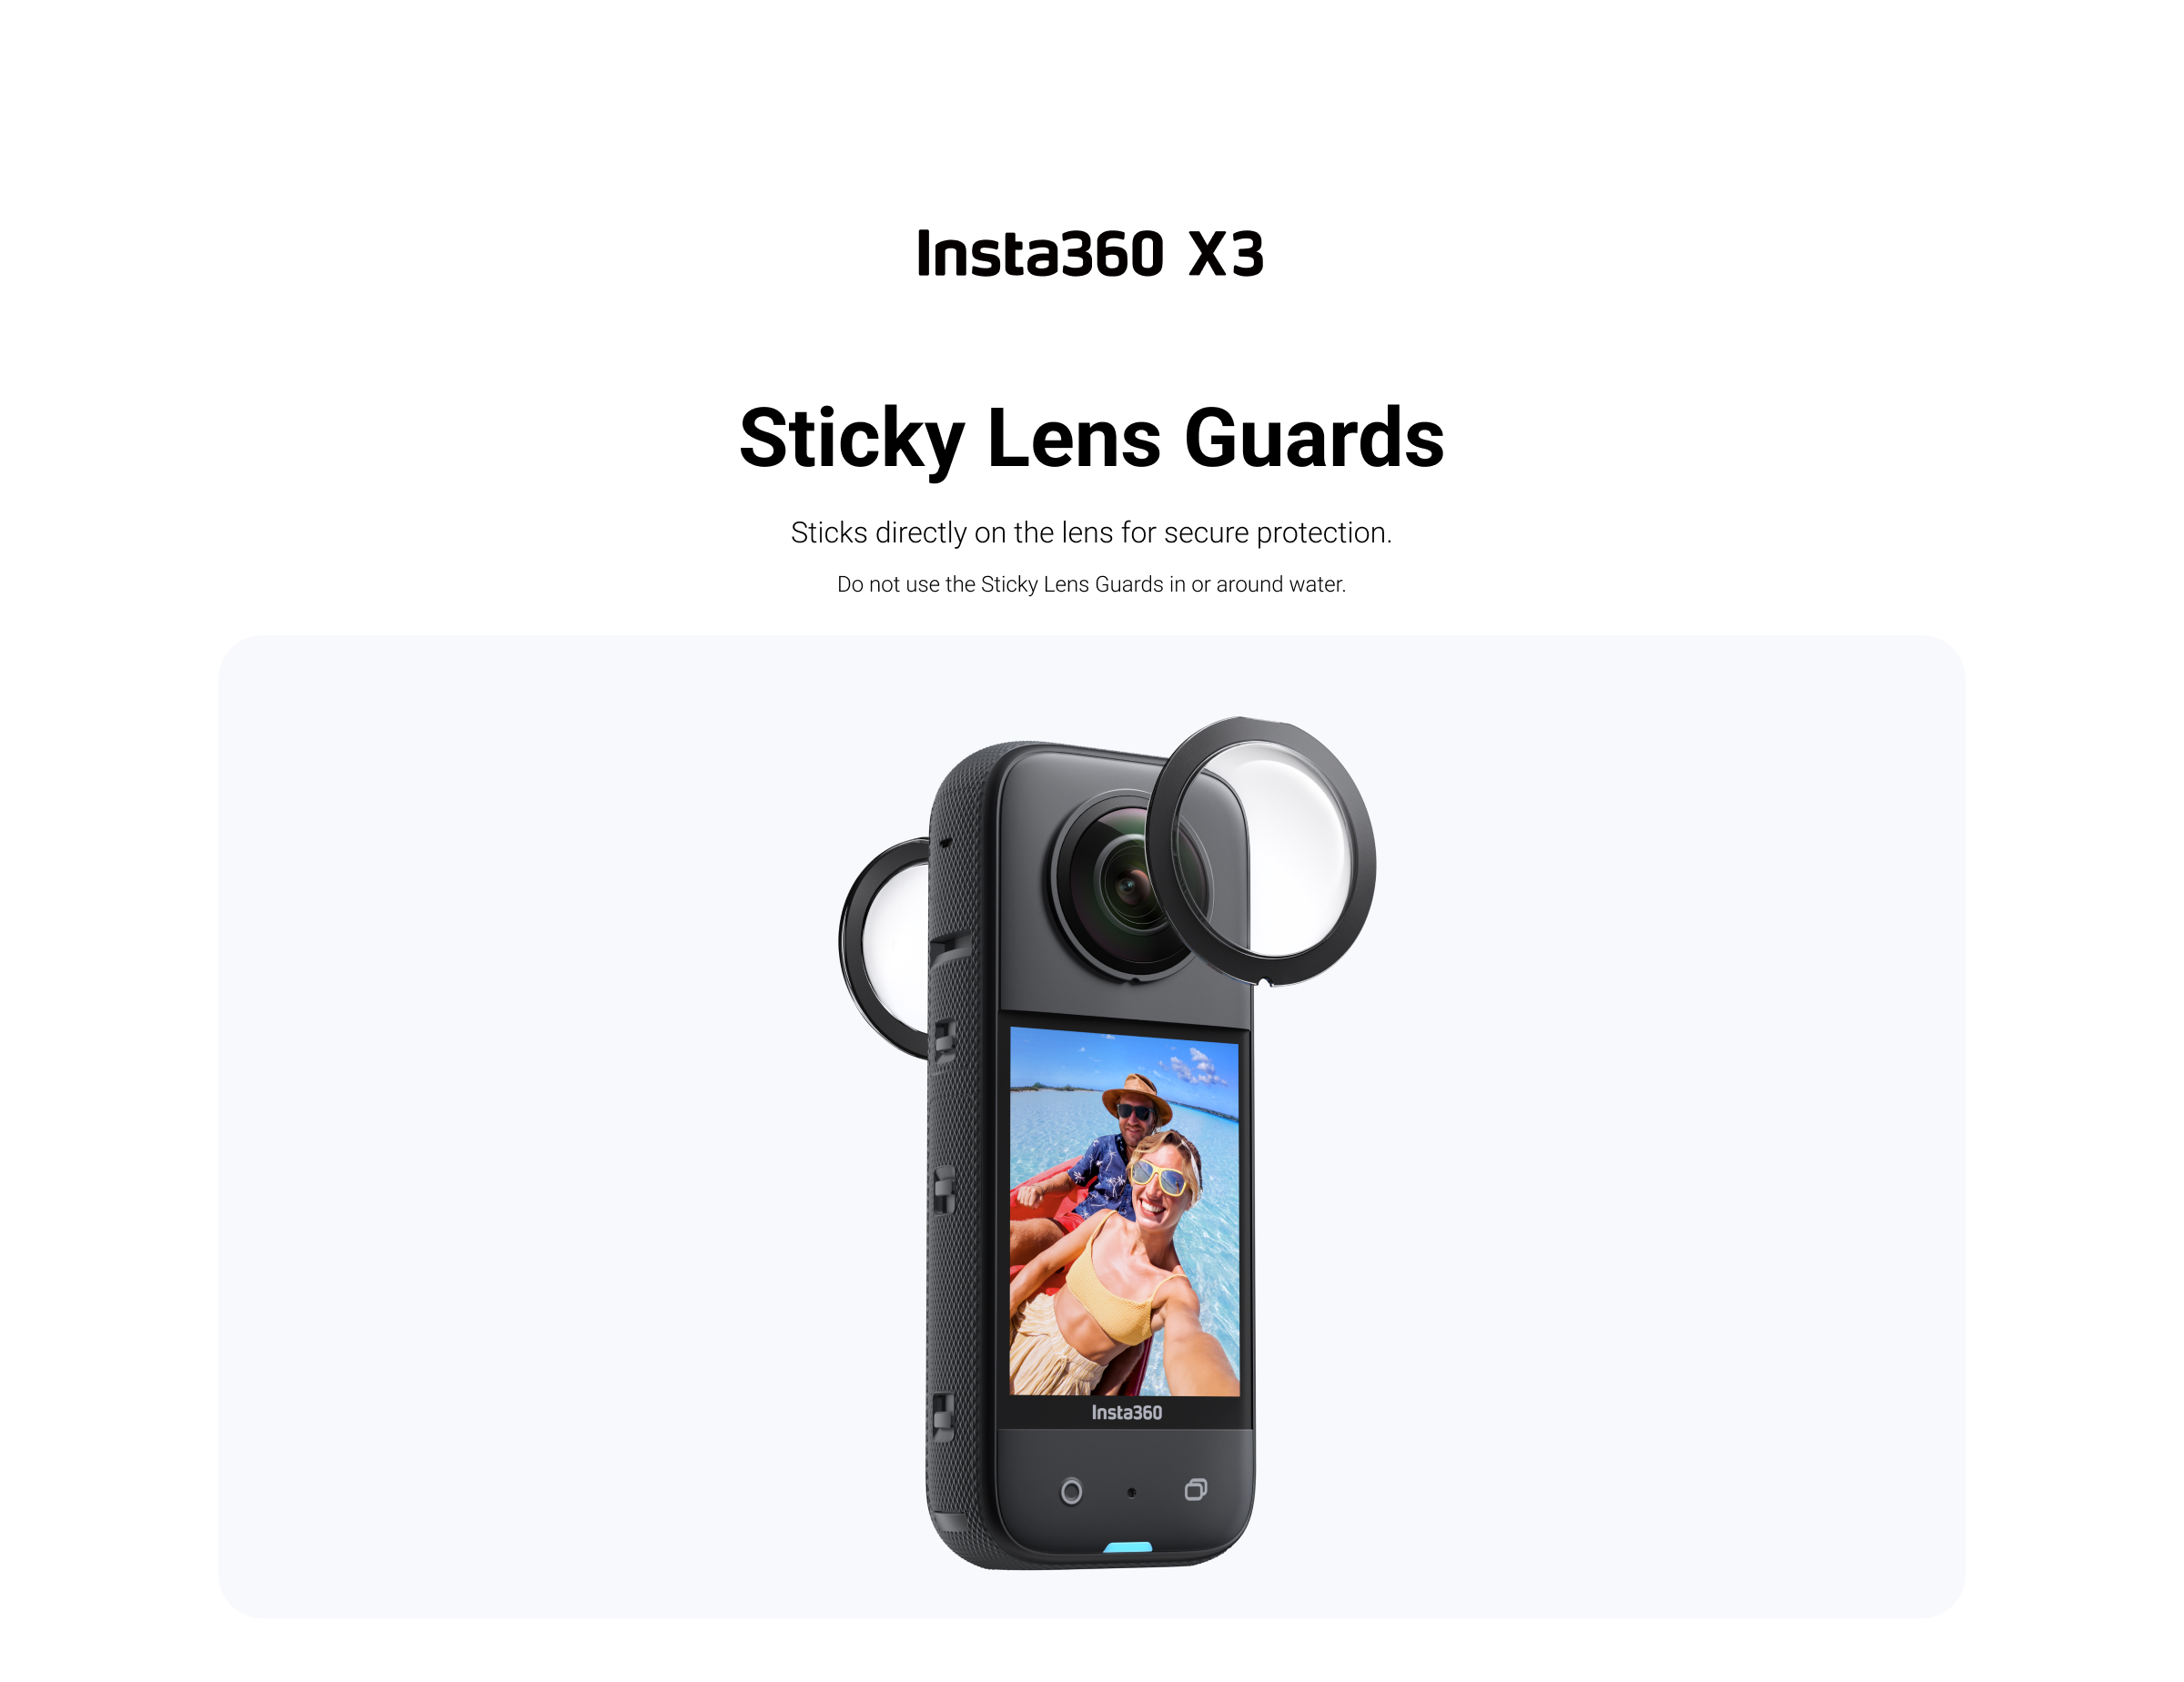 Insta360 Sticky Lens Guard